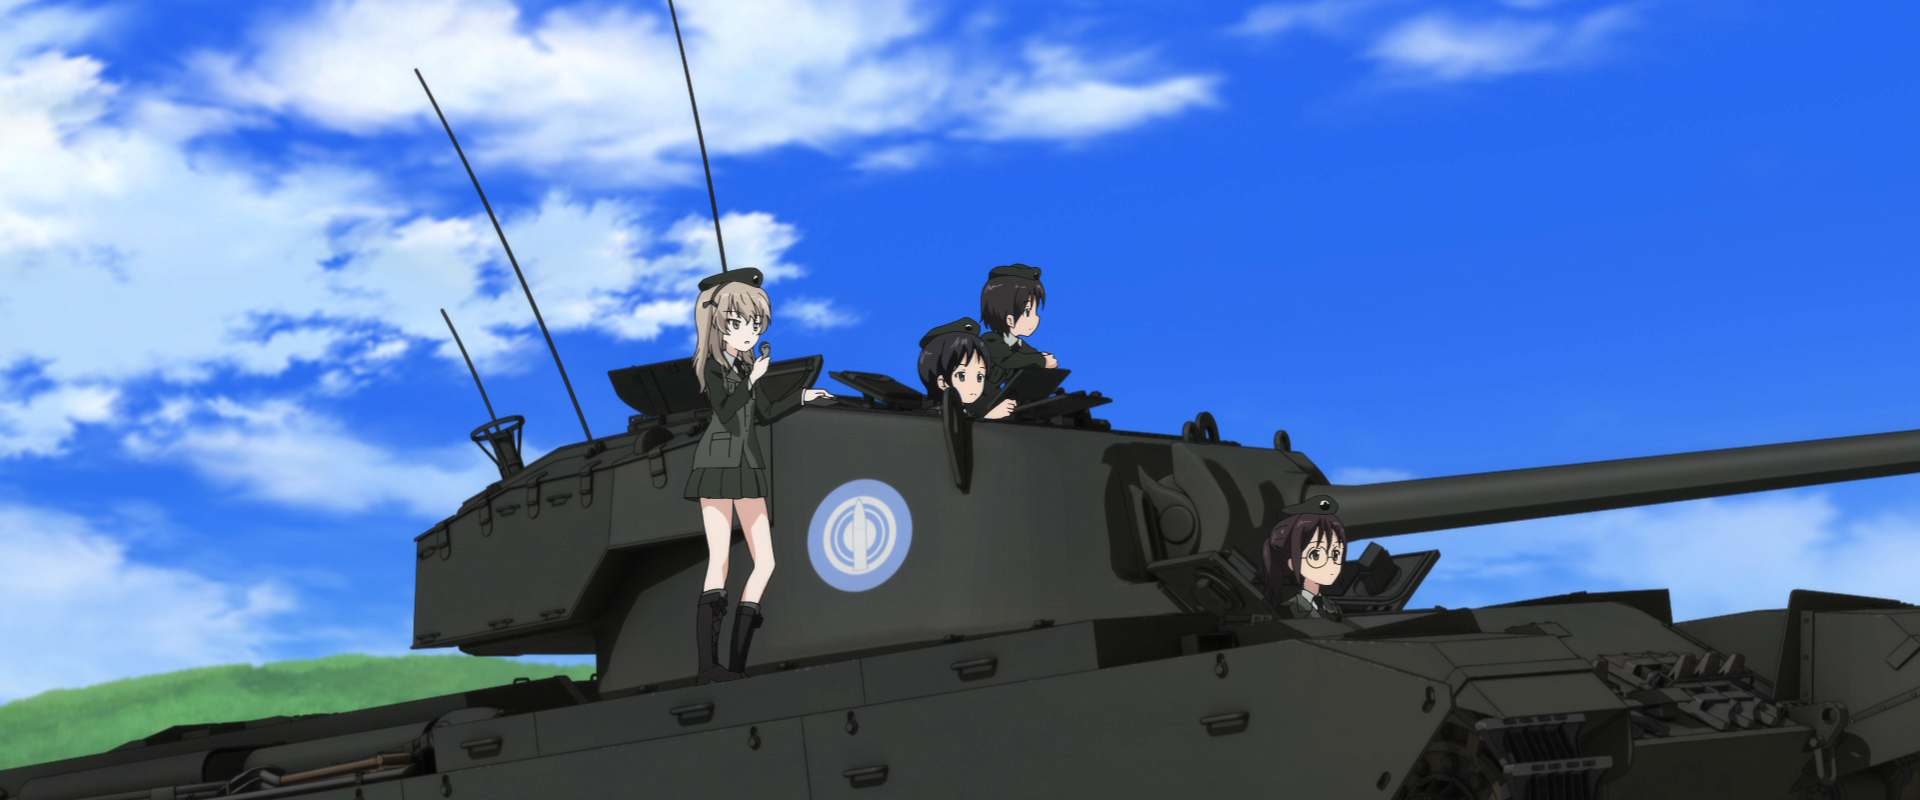 Girls und Panzer: The Movie background 2